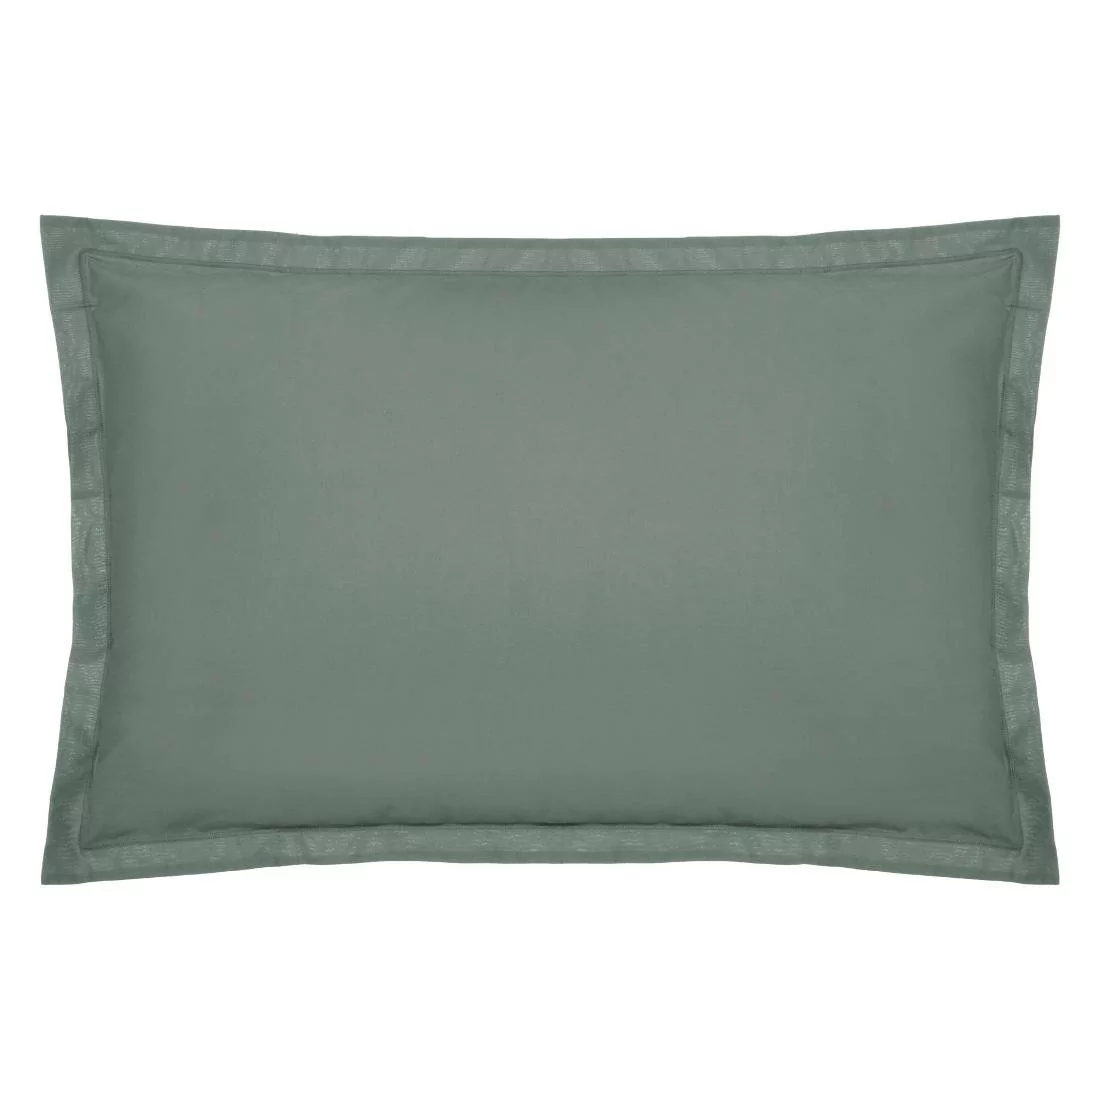 Poszewka na poduszkę z bawełny, 50 x 70 cm, zielona